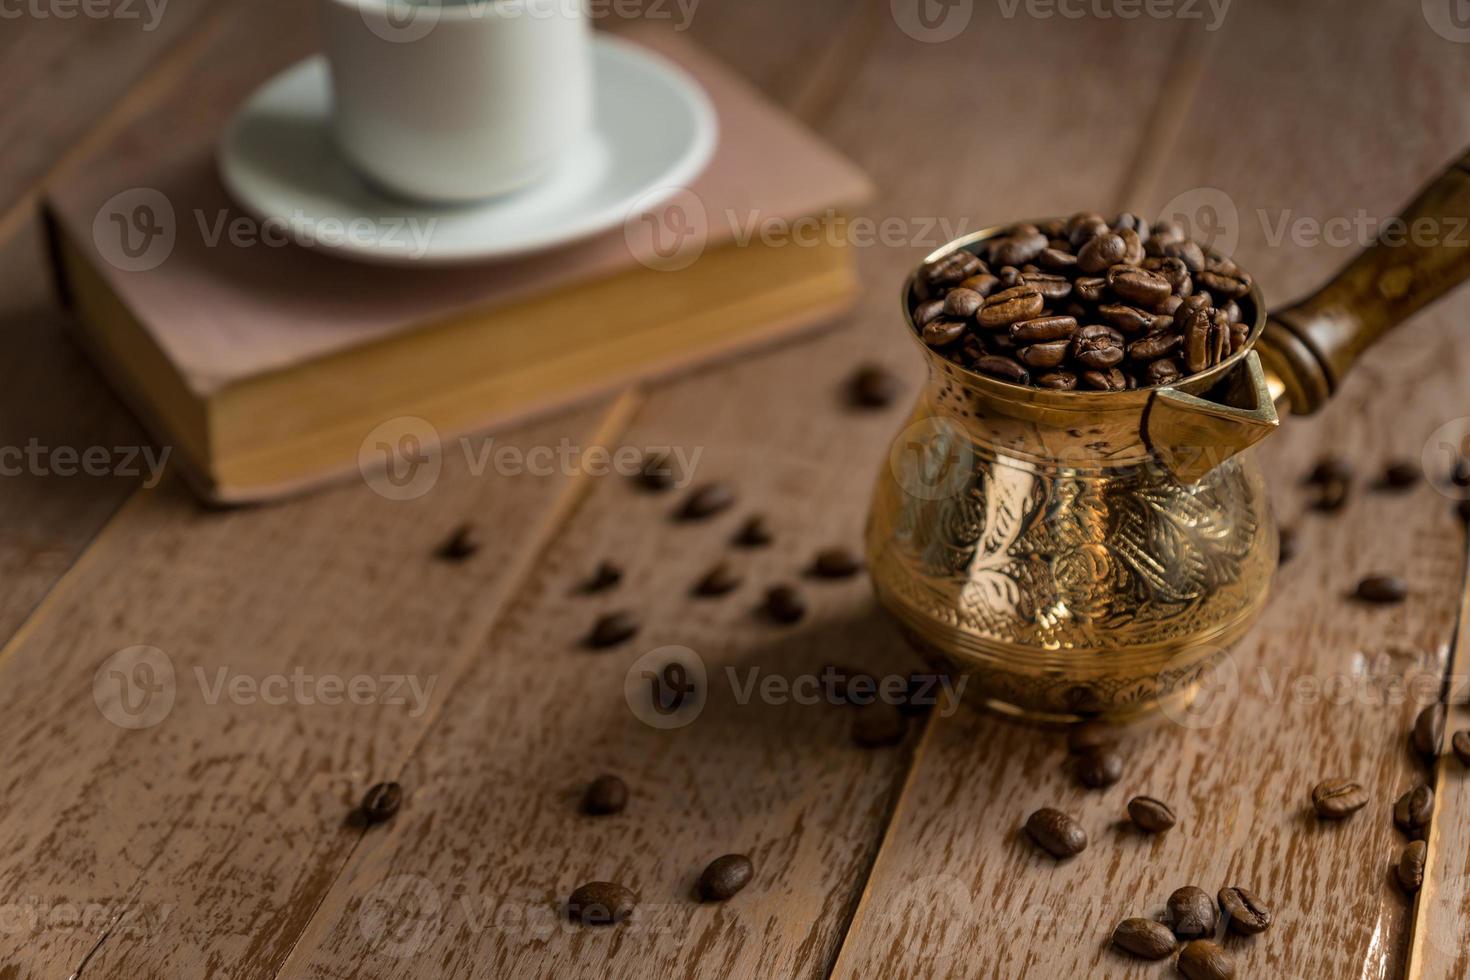 frisch geröstete kaffeebohnen in cezve traditionelle türkische kaffeekanne geschlossenes buch und tasse auf holztisch. foto